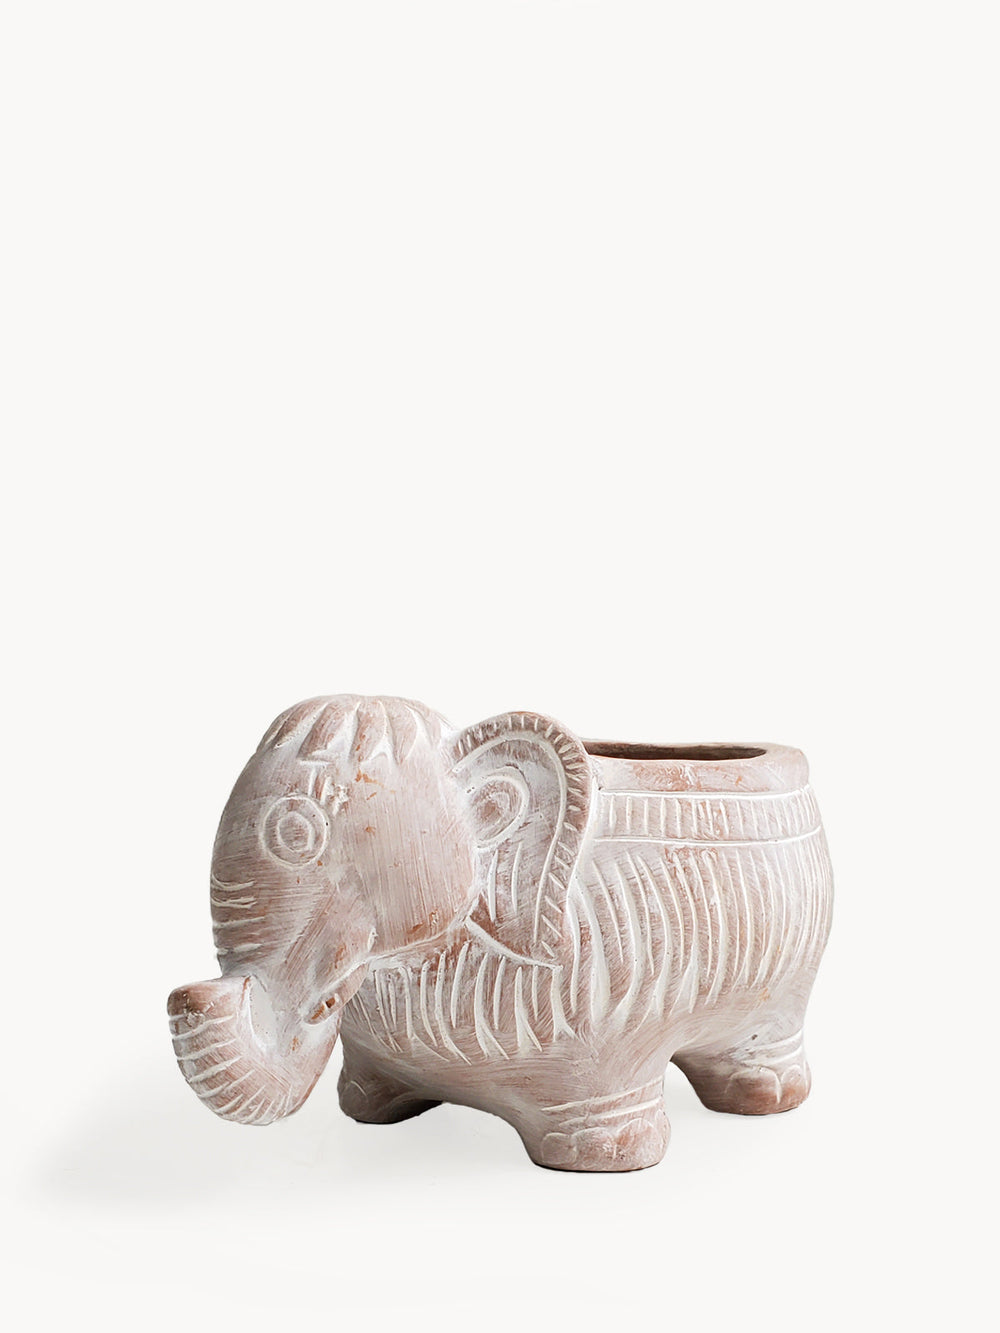 Terracotta Pot - Elephant by KORISSA